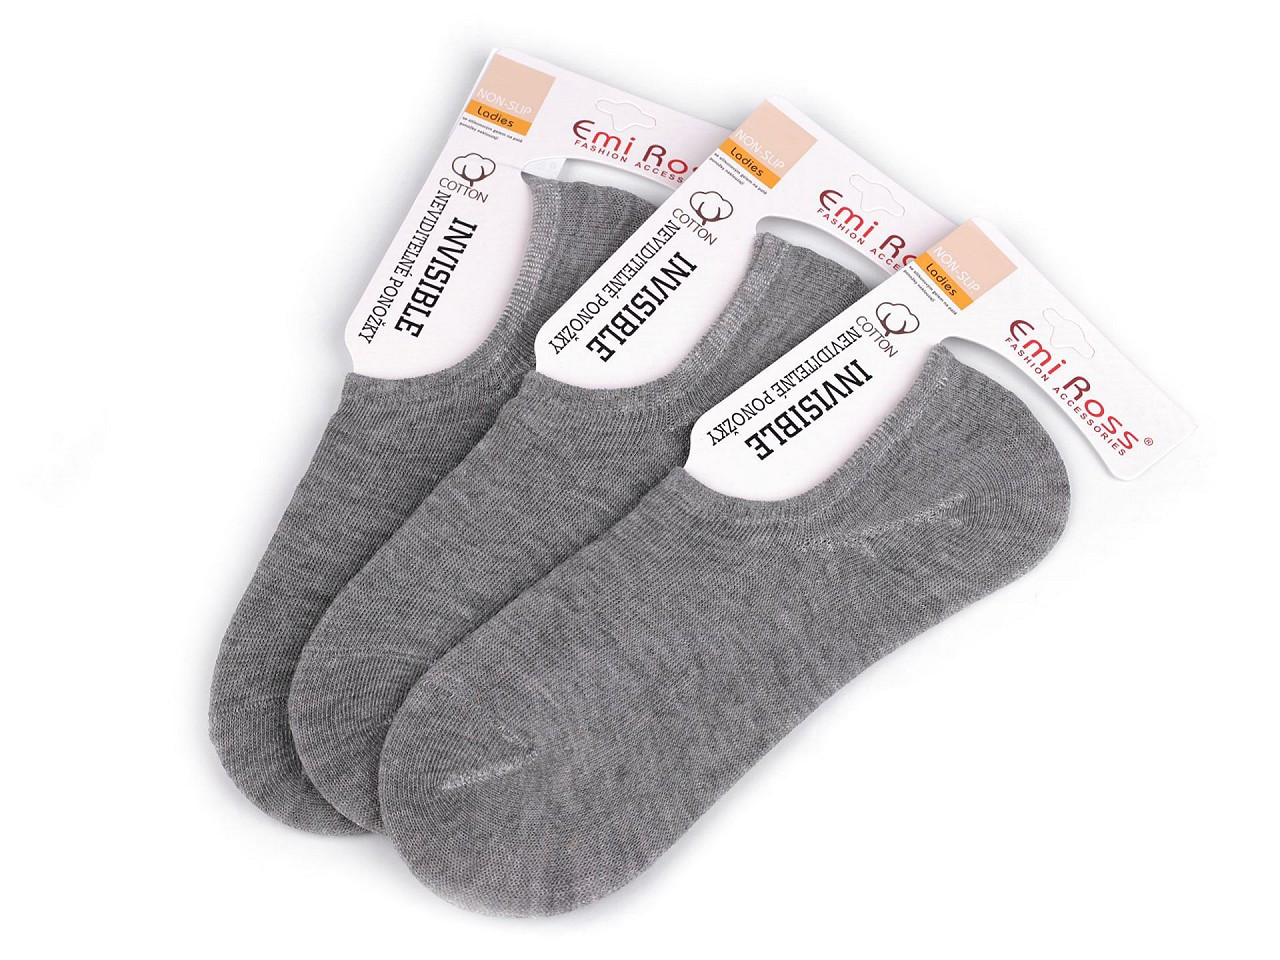 Dámské bavlněné ponožky do tenisek Emi Ross, barva 4 (vel. 35-38) šedá